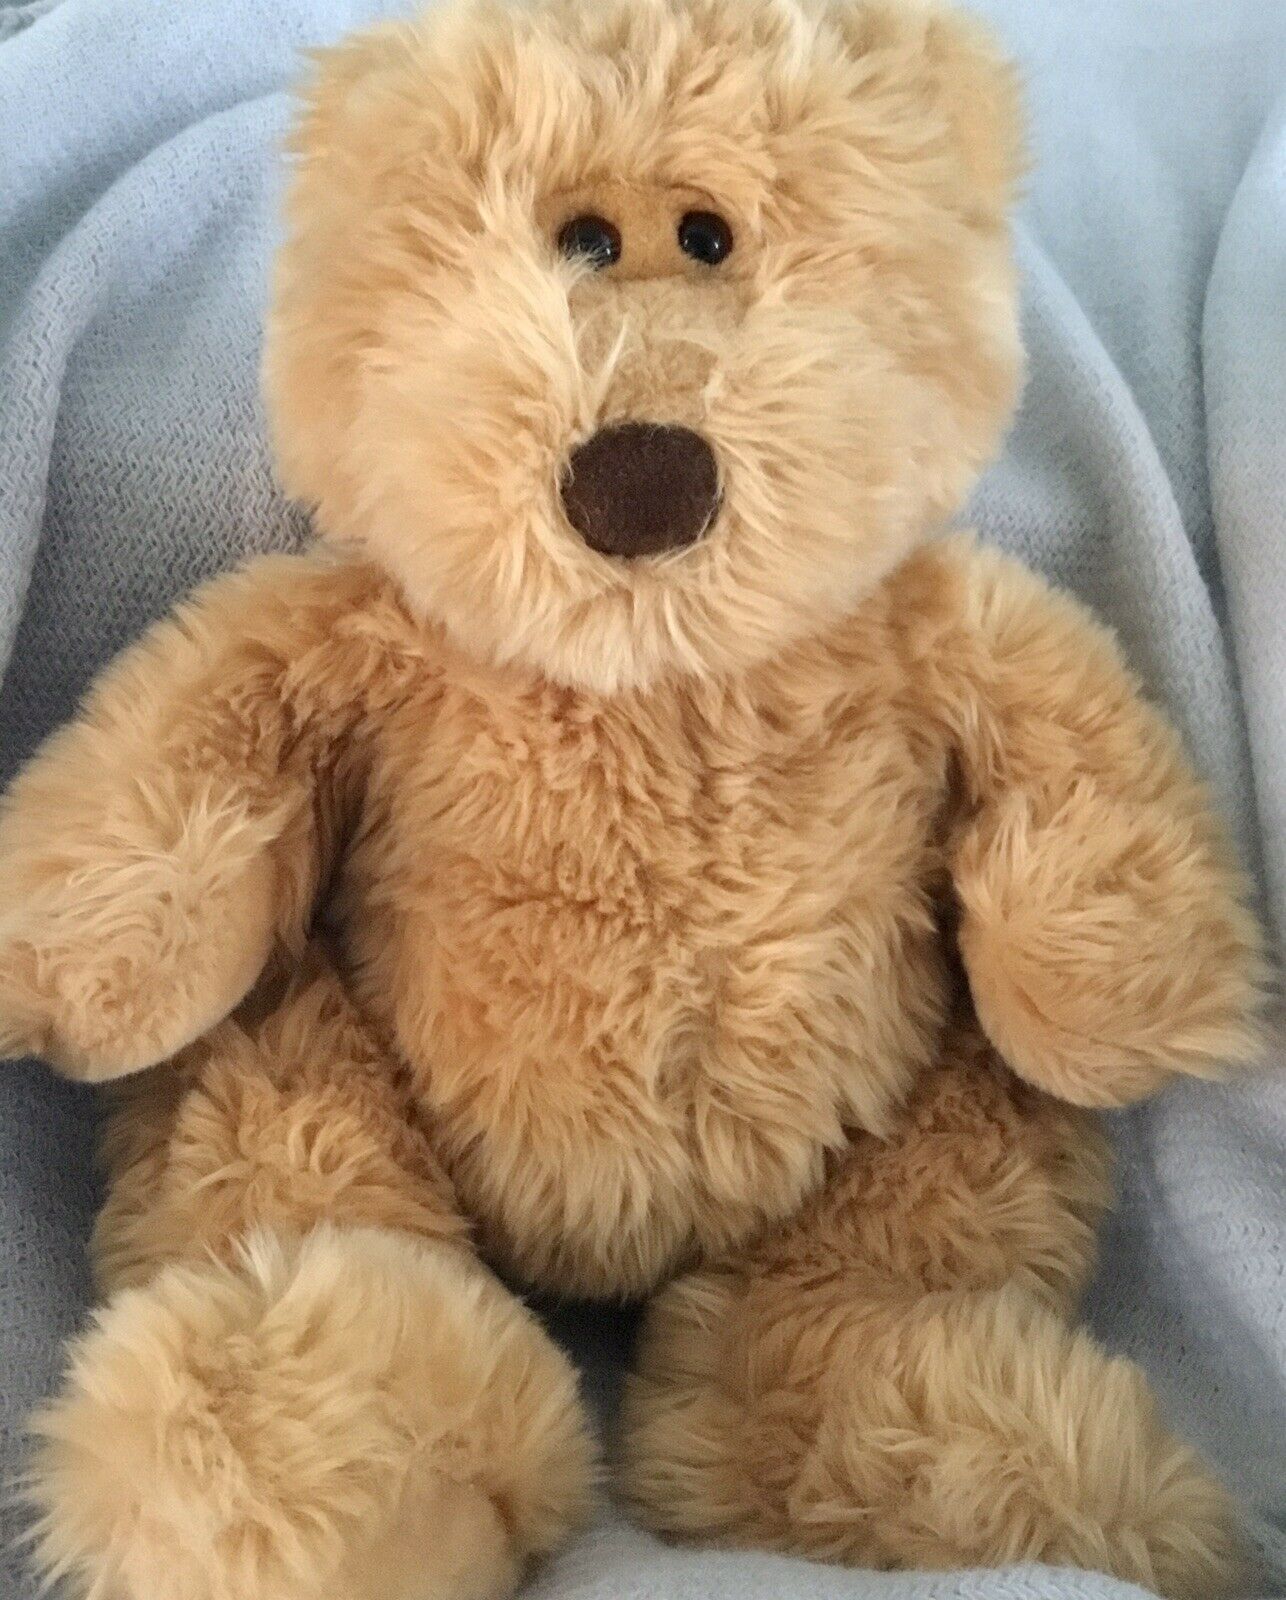 Toys R Us Animal Alley 2000 Teddy Bear 15” Tan Beige Brown Plush Stuffed